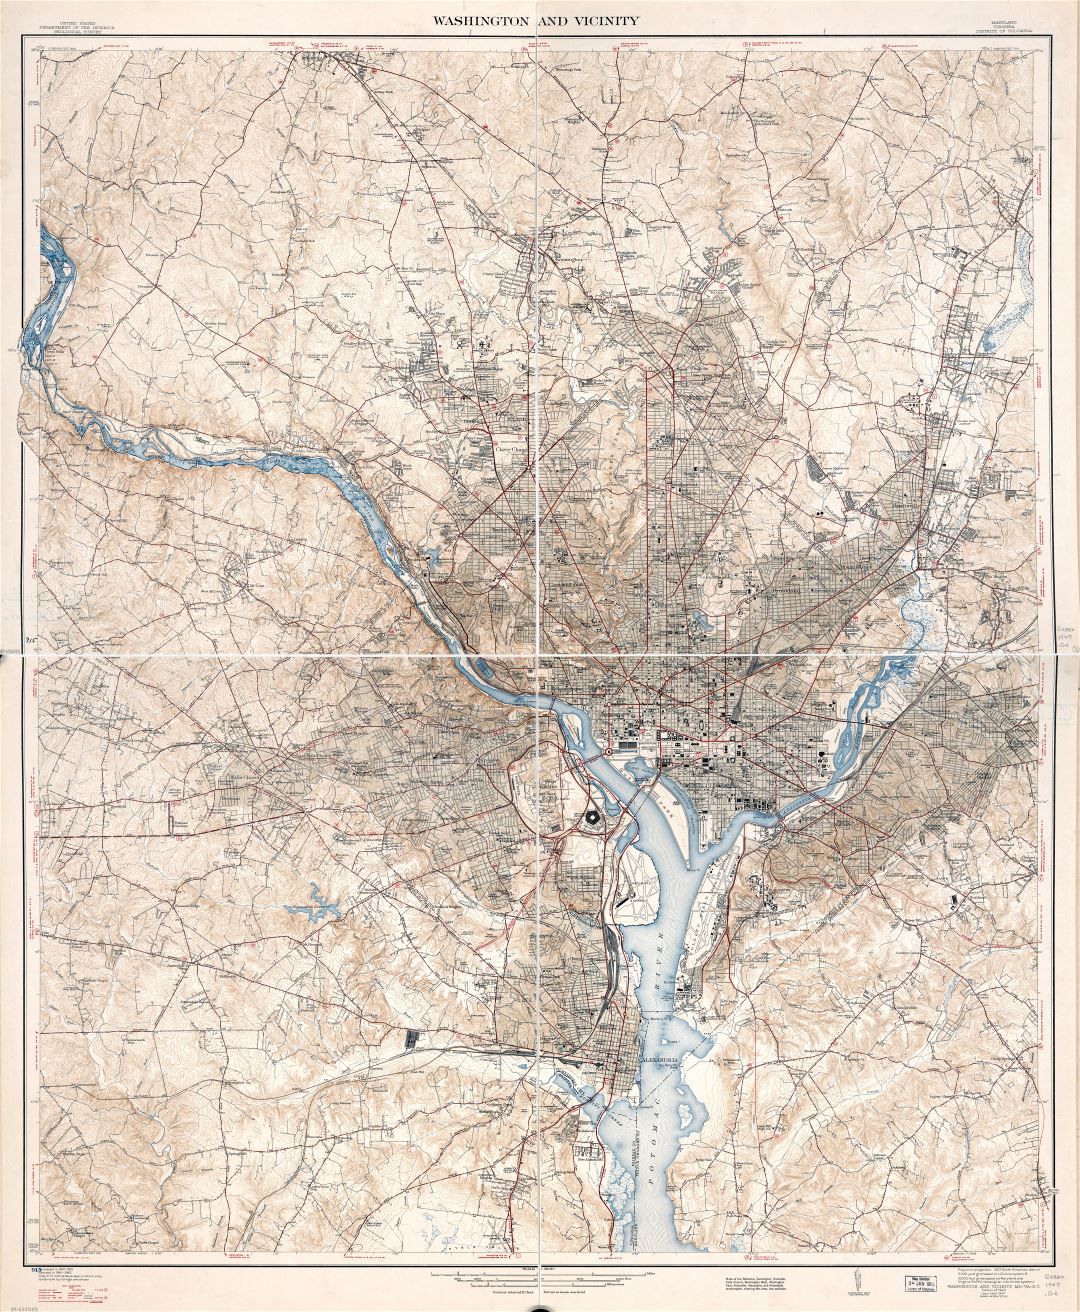 Крупномасштабная детальная карта Вашингтона и окрестностей, округ Колумбия, штат Мэриленд, Вирджиния - 1947